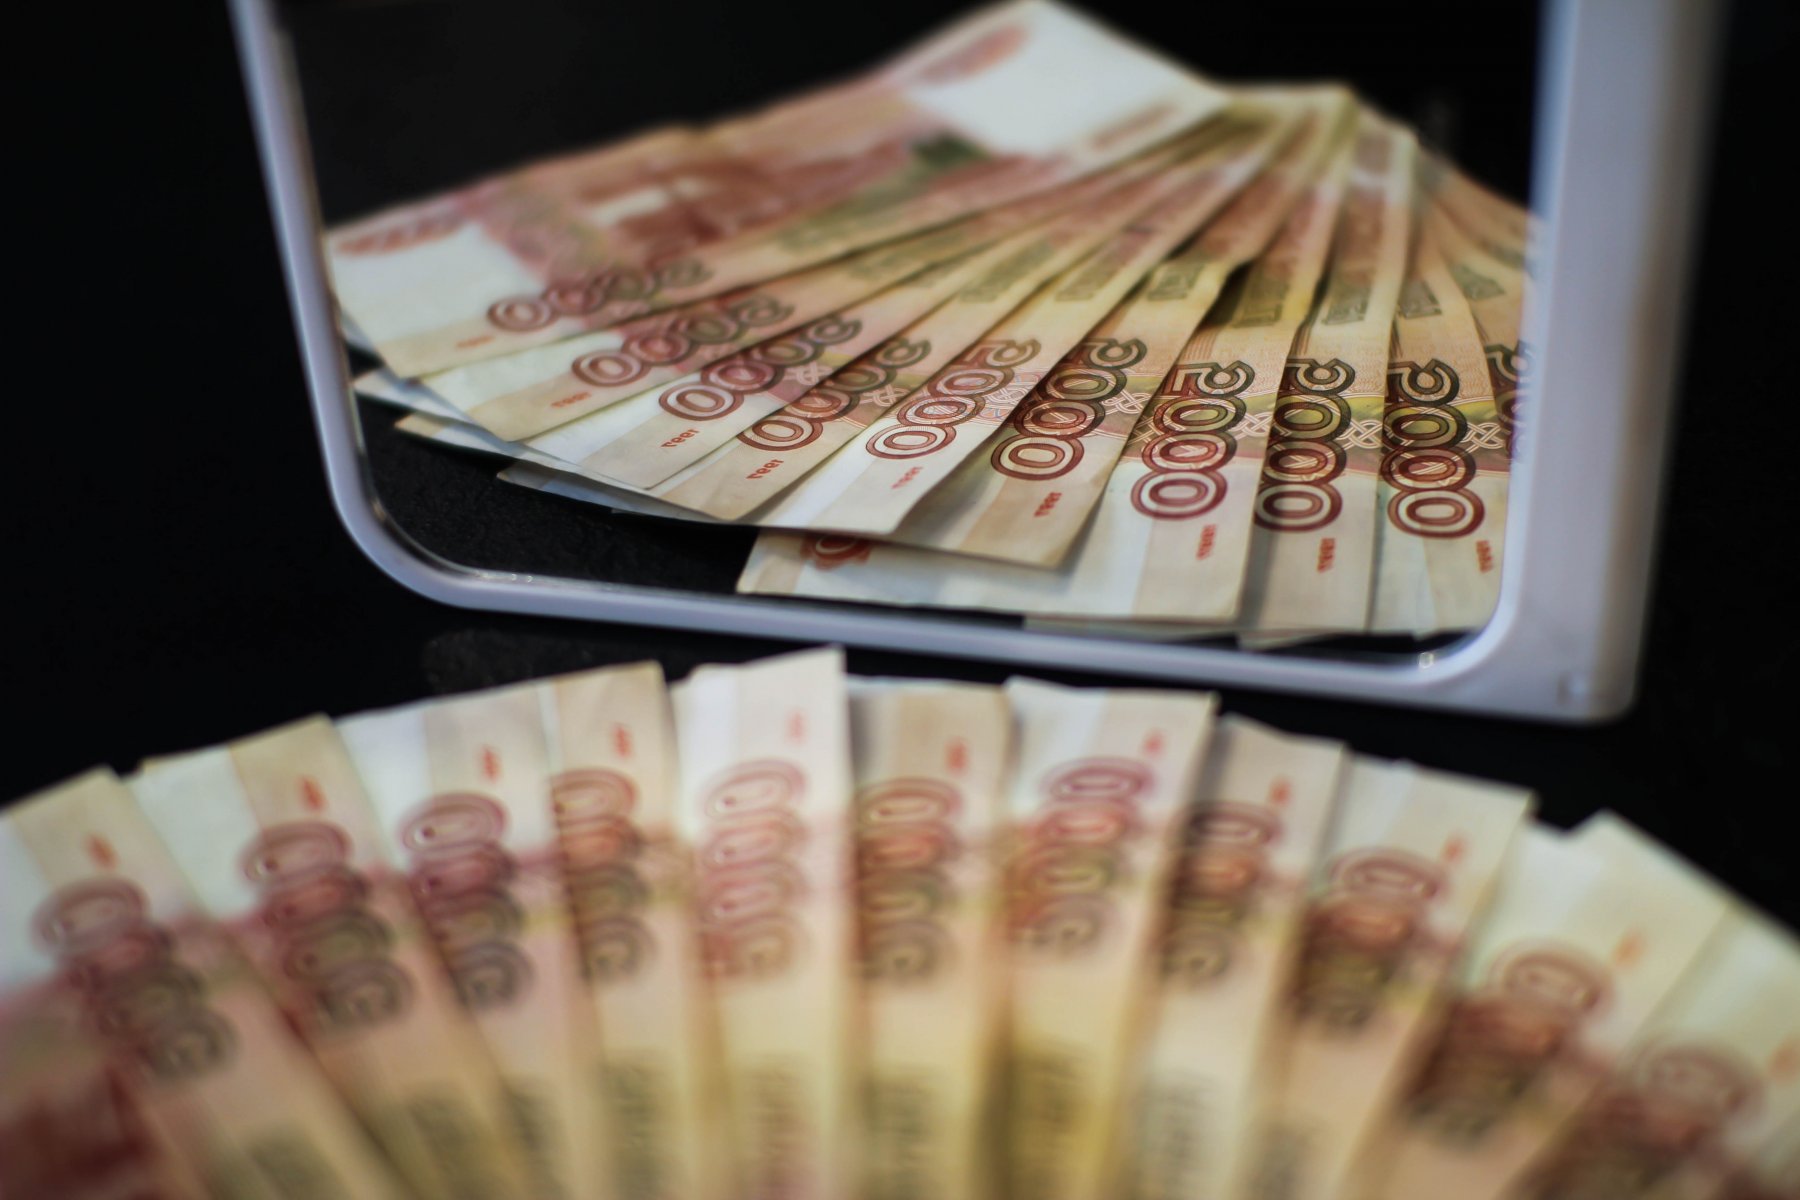 ТСЖ из Пушкино выплатило долг за коммуналку почти в 3 млн рублей 